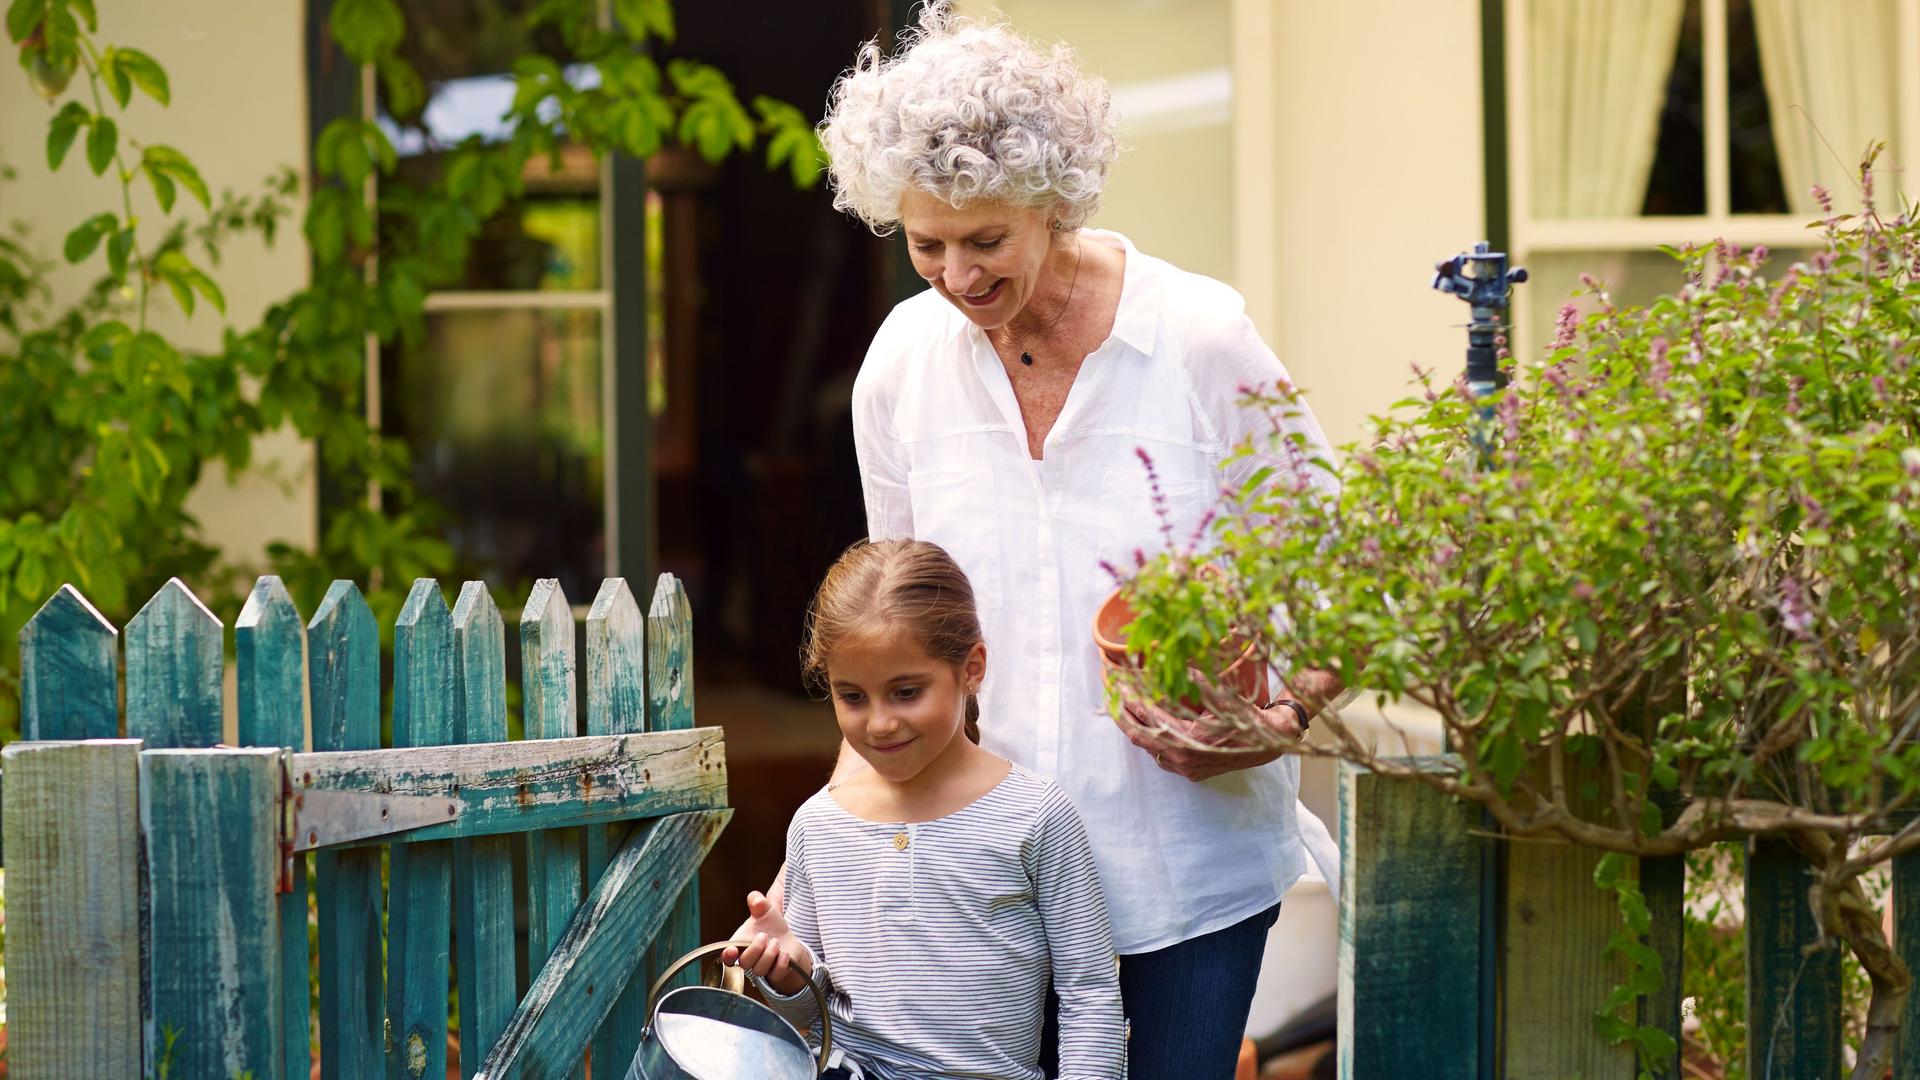 Oma und Enkelin haben Gartenarbeitsutensilien in den Händen und laufen durch ein Gartentor. Im Hintergrund ist ein Einfamilienhaus zu sehen.